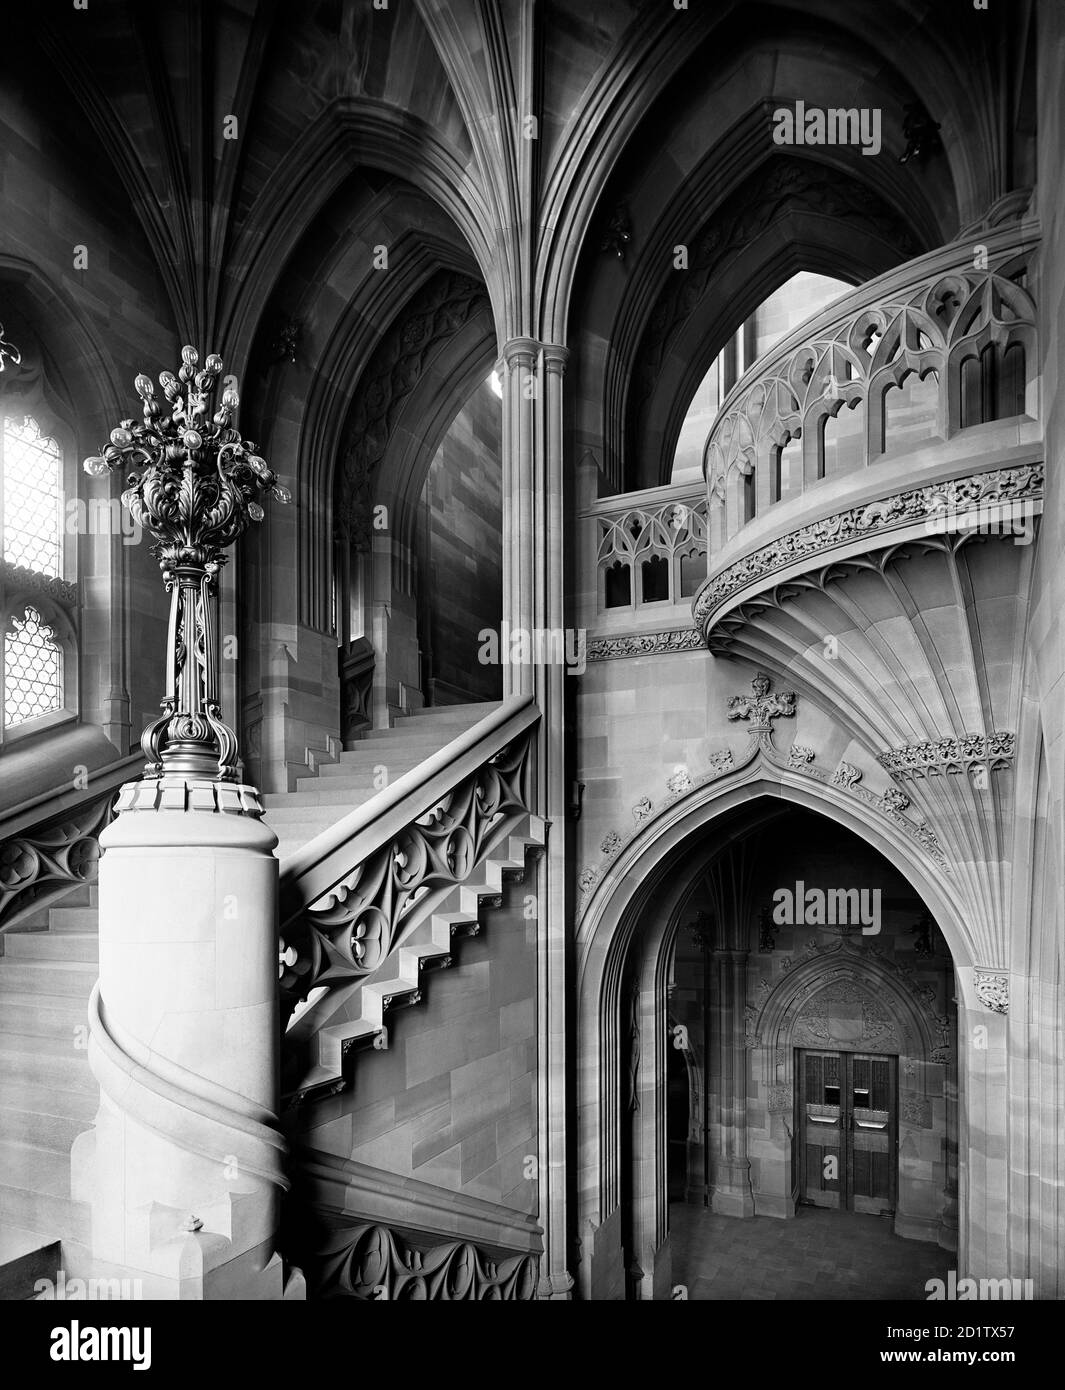 BIBLIOTHÈQUE JOHN RYLANDS, Deansgate, Manchester. Vue de l'intérieur, avec un escalier et des détails architecturaux vus d'un demi-atterrissage. La bibliothèque a été achevée en 1899 aux desseins de l'architecte Basil Champneys, et a été commandée par Enriqueta Augustina Rylands à la mémoire de son défunt mari. La bibliothèque est un bel exemple de l'architecture victorienne de style gothique. Photographié par Bedford Lemere and Co. En 1900. Banque D'Images